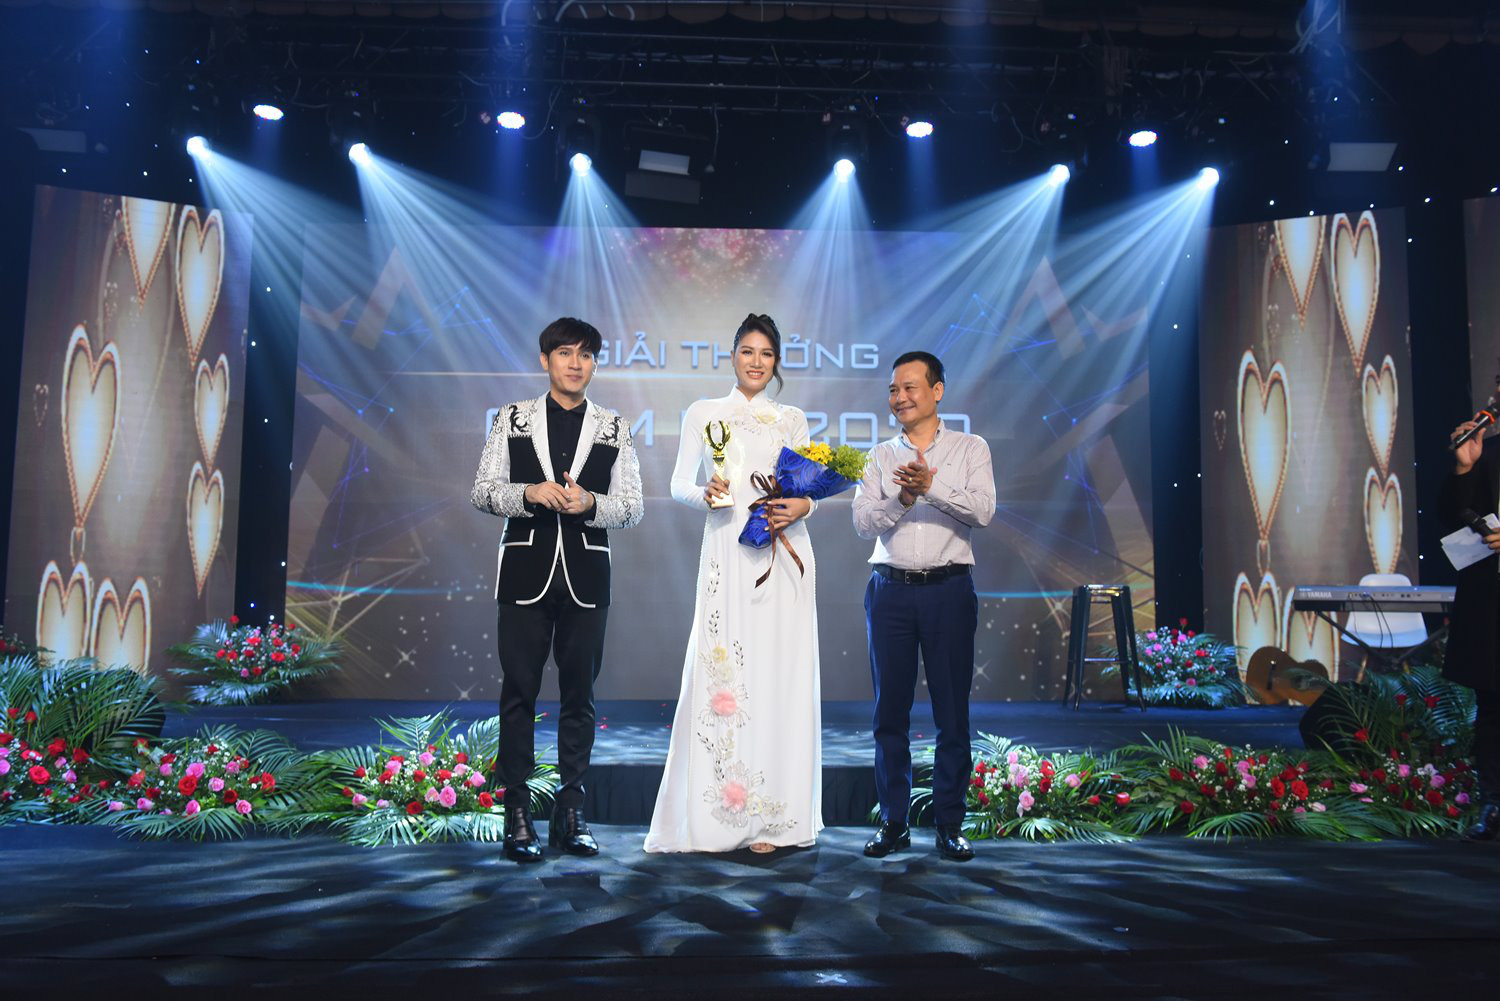 Trang Trần nhận giải thưởng Chim Én 2020 vinh danh tấm lòng thiện nguyện - Ảnh 1.